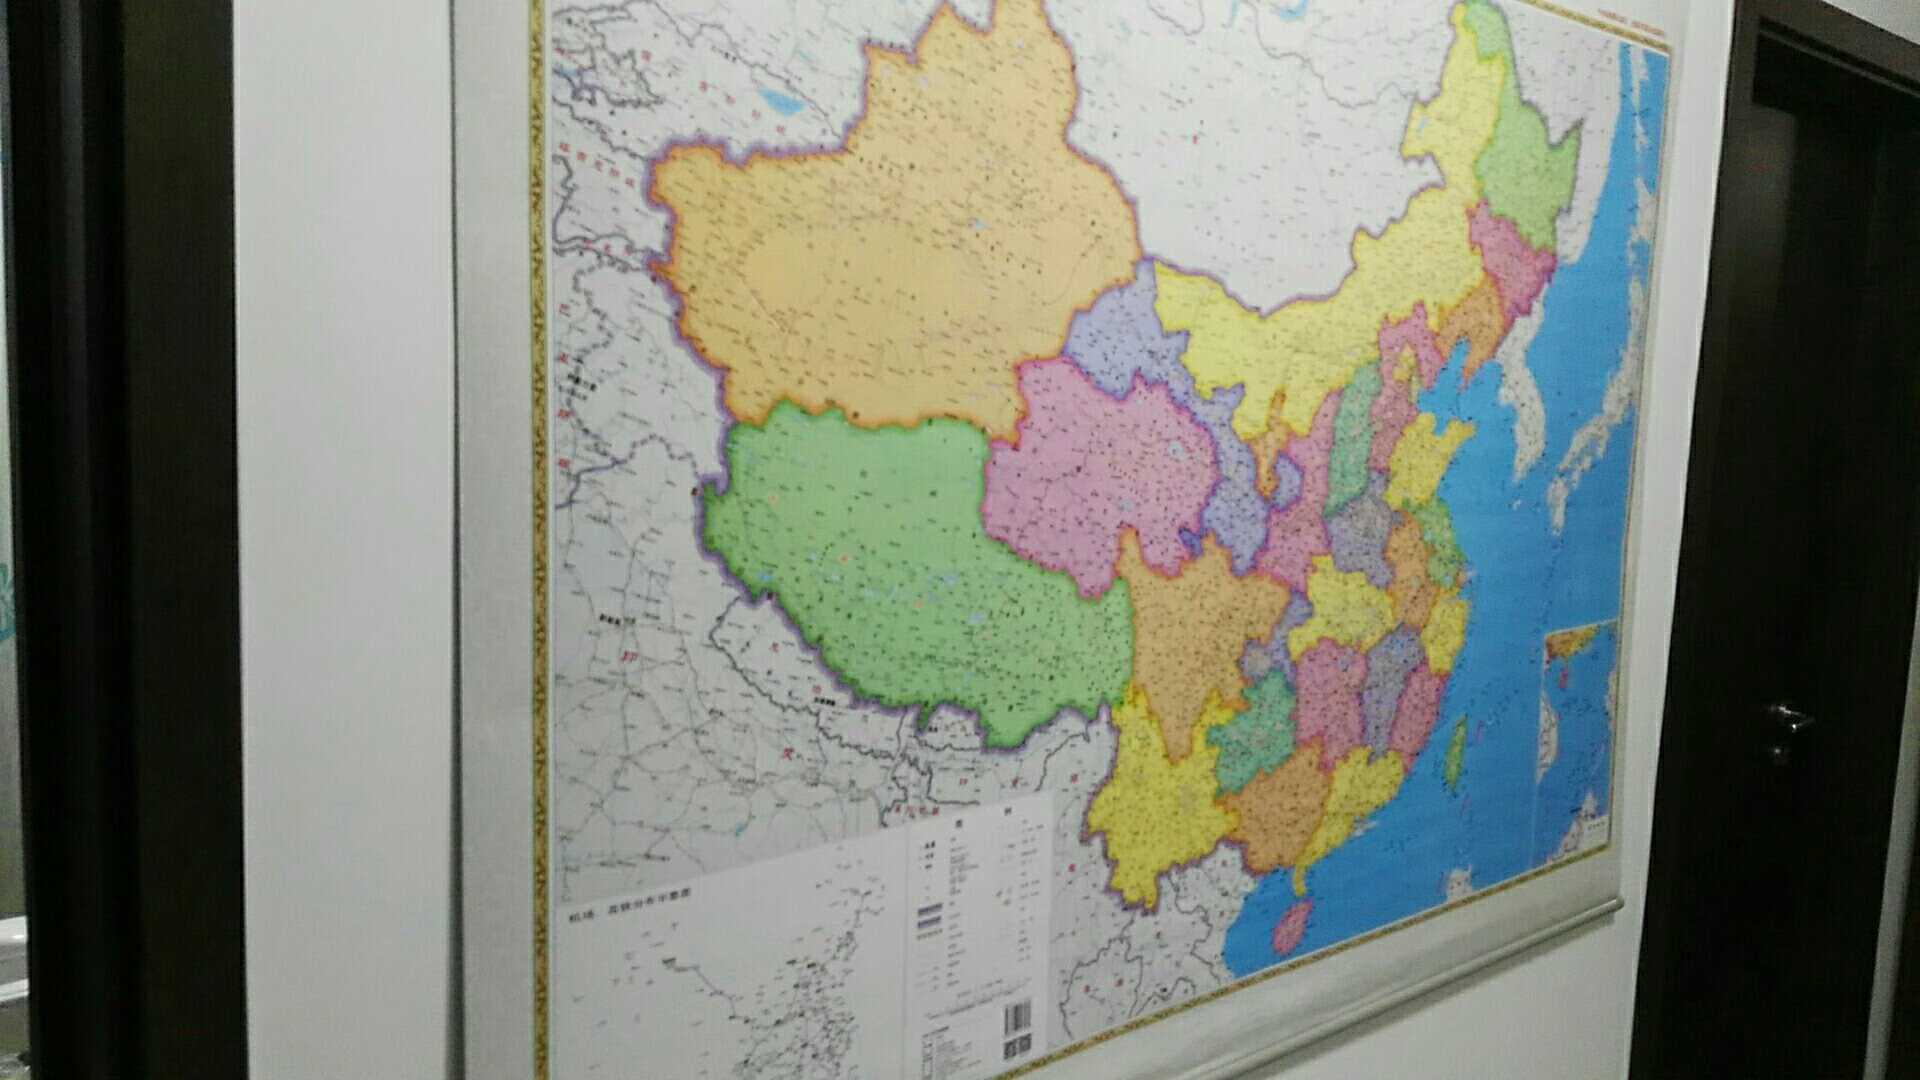 先买了中国地图，质量不错，今又买世界地图，即装饰又实用。